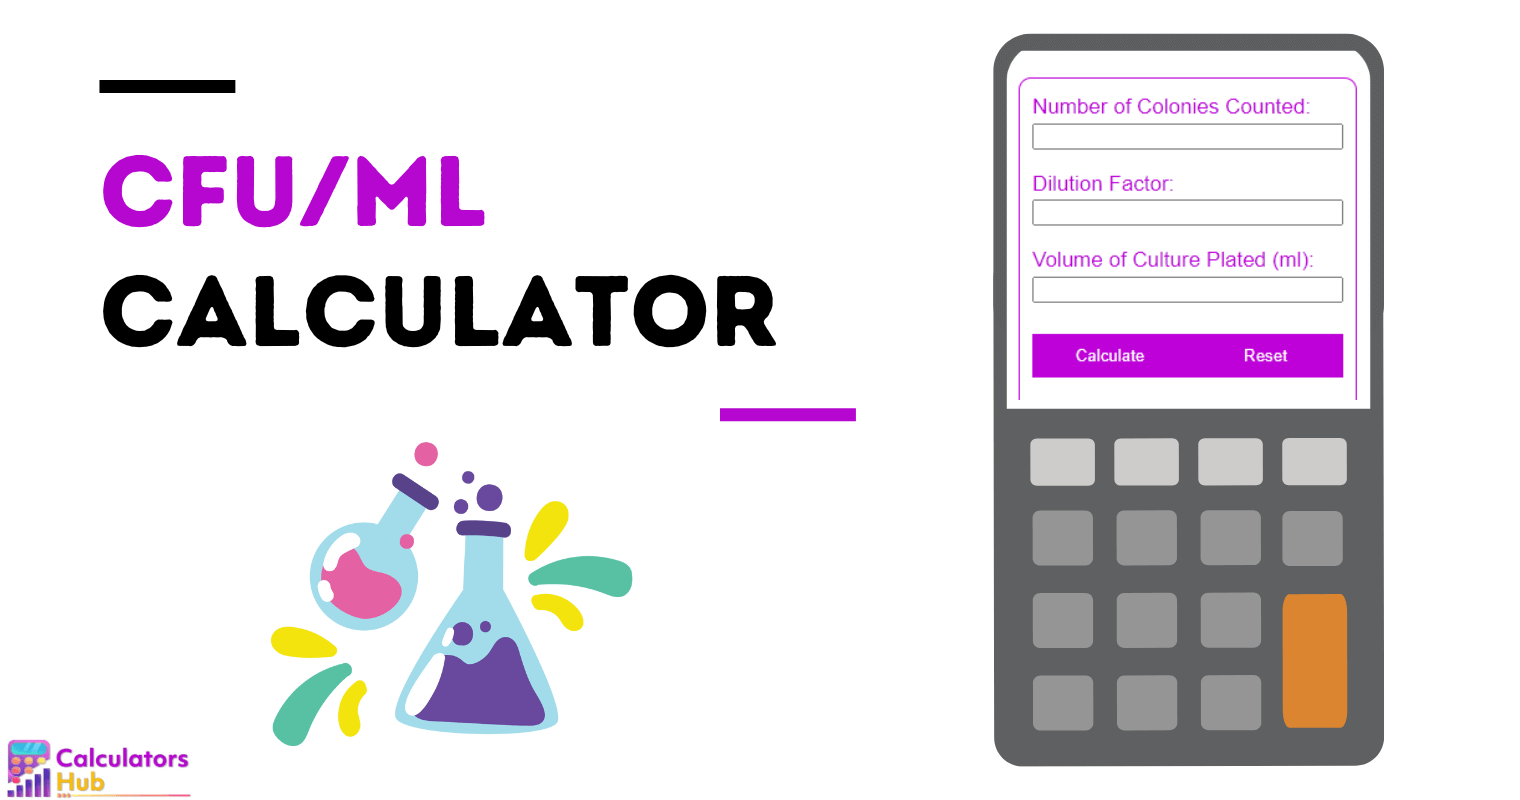 CFU/ml Calculator